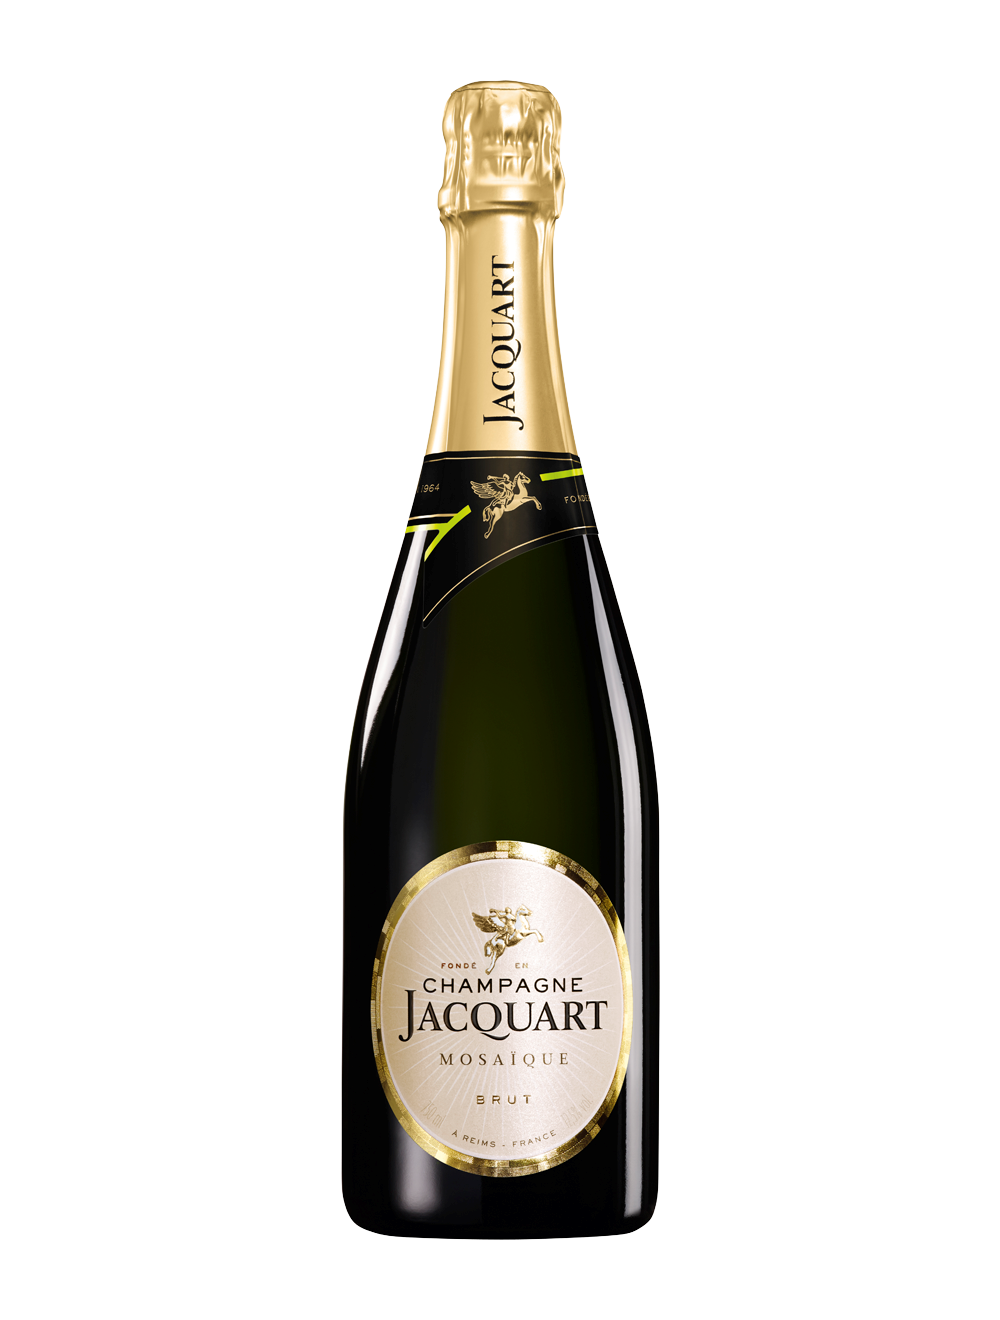 Wiegen Luchtpost uitdrukking Champagne Jacquart Mosaïque brut | Voordelig online Champagne kopen |  Online Champagneshop met ruime keuze mousserende wijnen